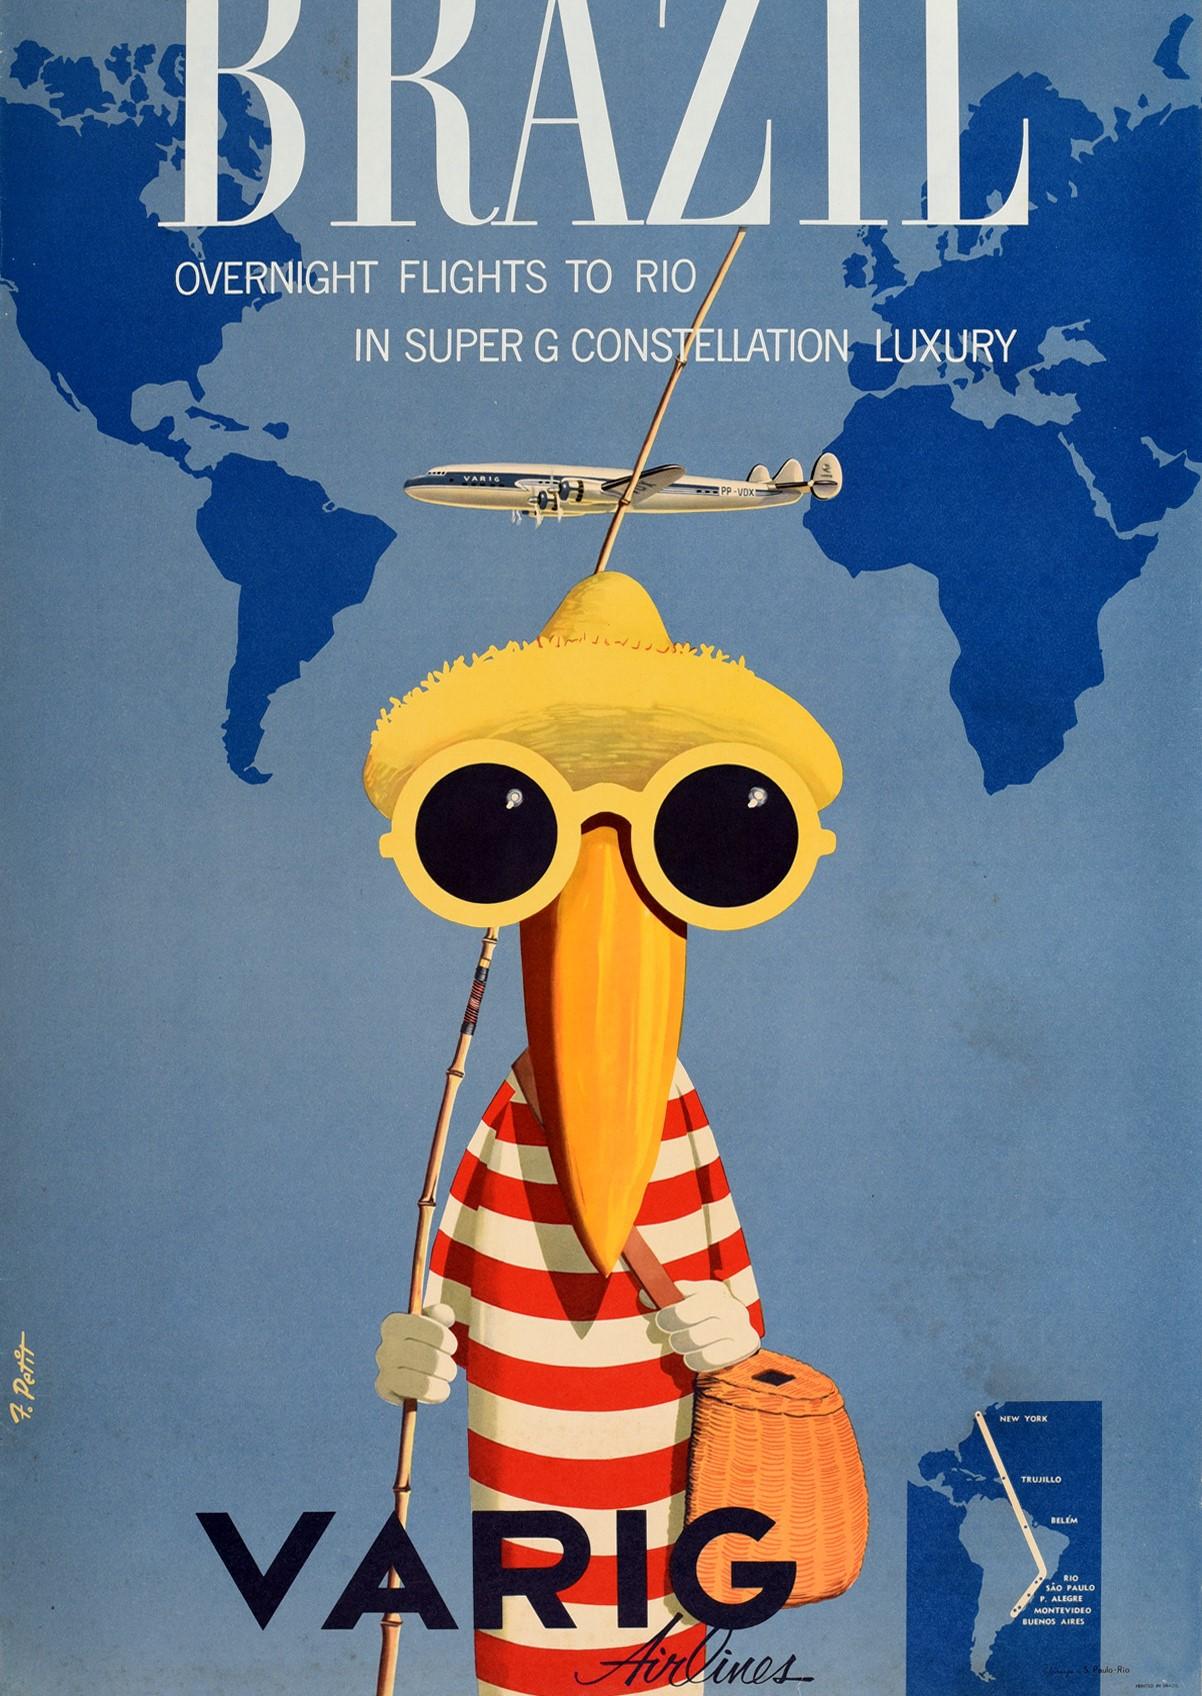 Original Vintage-Reiseplakat, das für Brasilienübernachtungsflüge nach Rio in Super G Constellation Luxury von Varig Airlines wirbt. Es zeigt ein lustiges Design mit einem Vogel, der ein rot-weiß gestreiftes Oberteil, einen Strohsonnenhut und eine